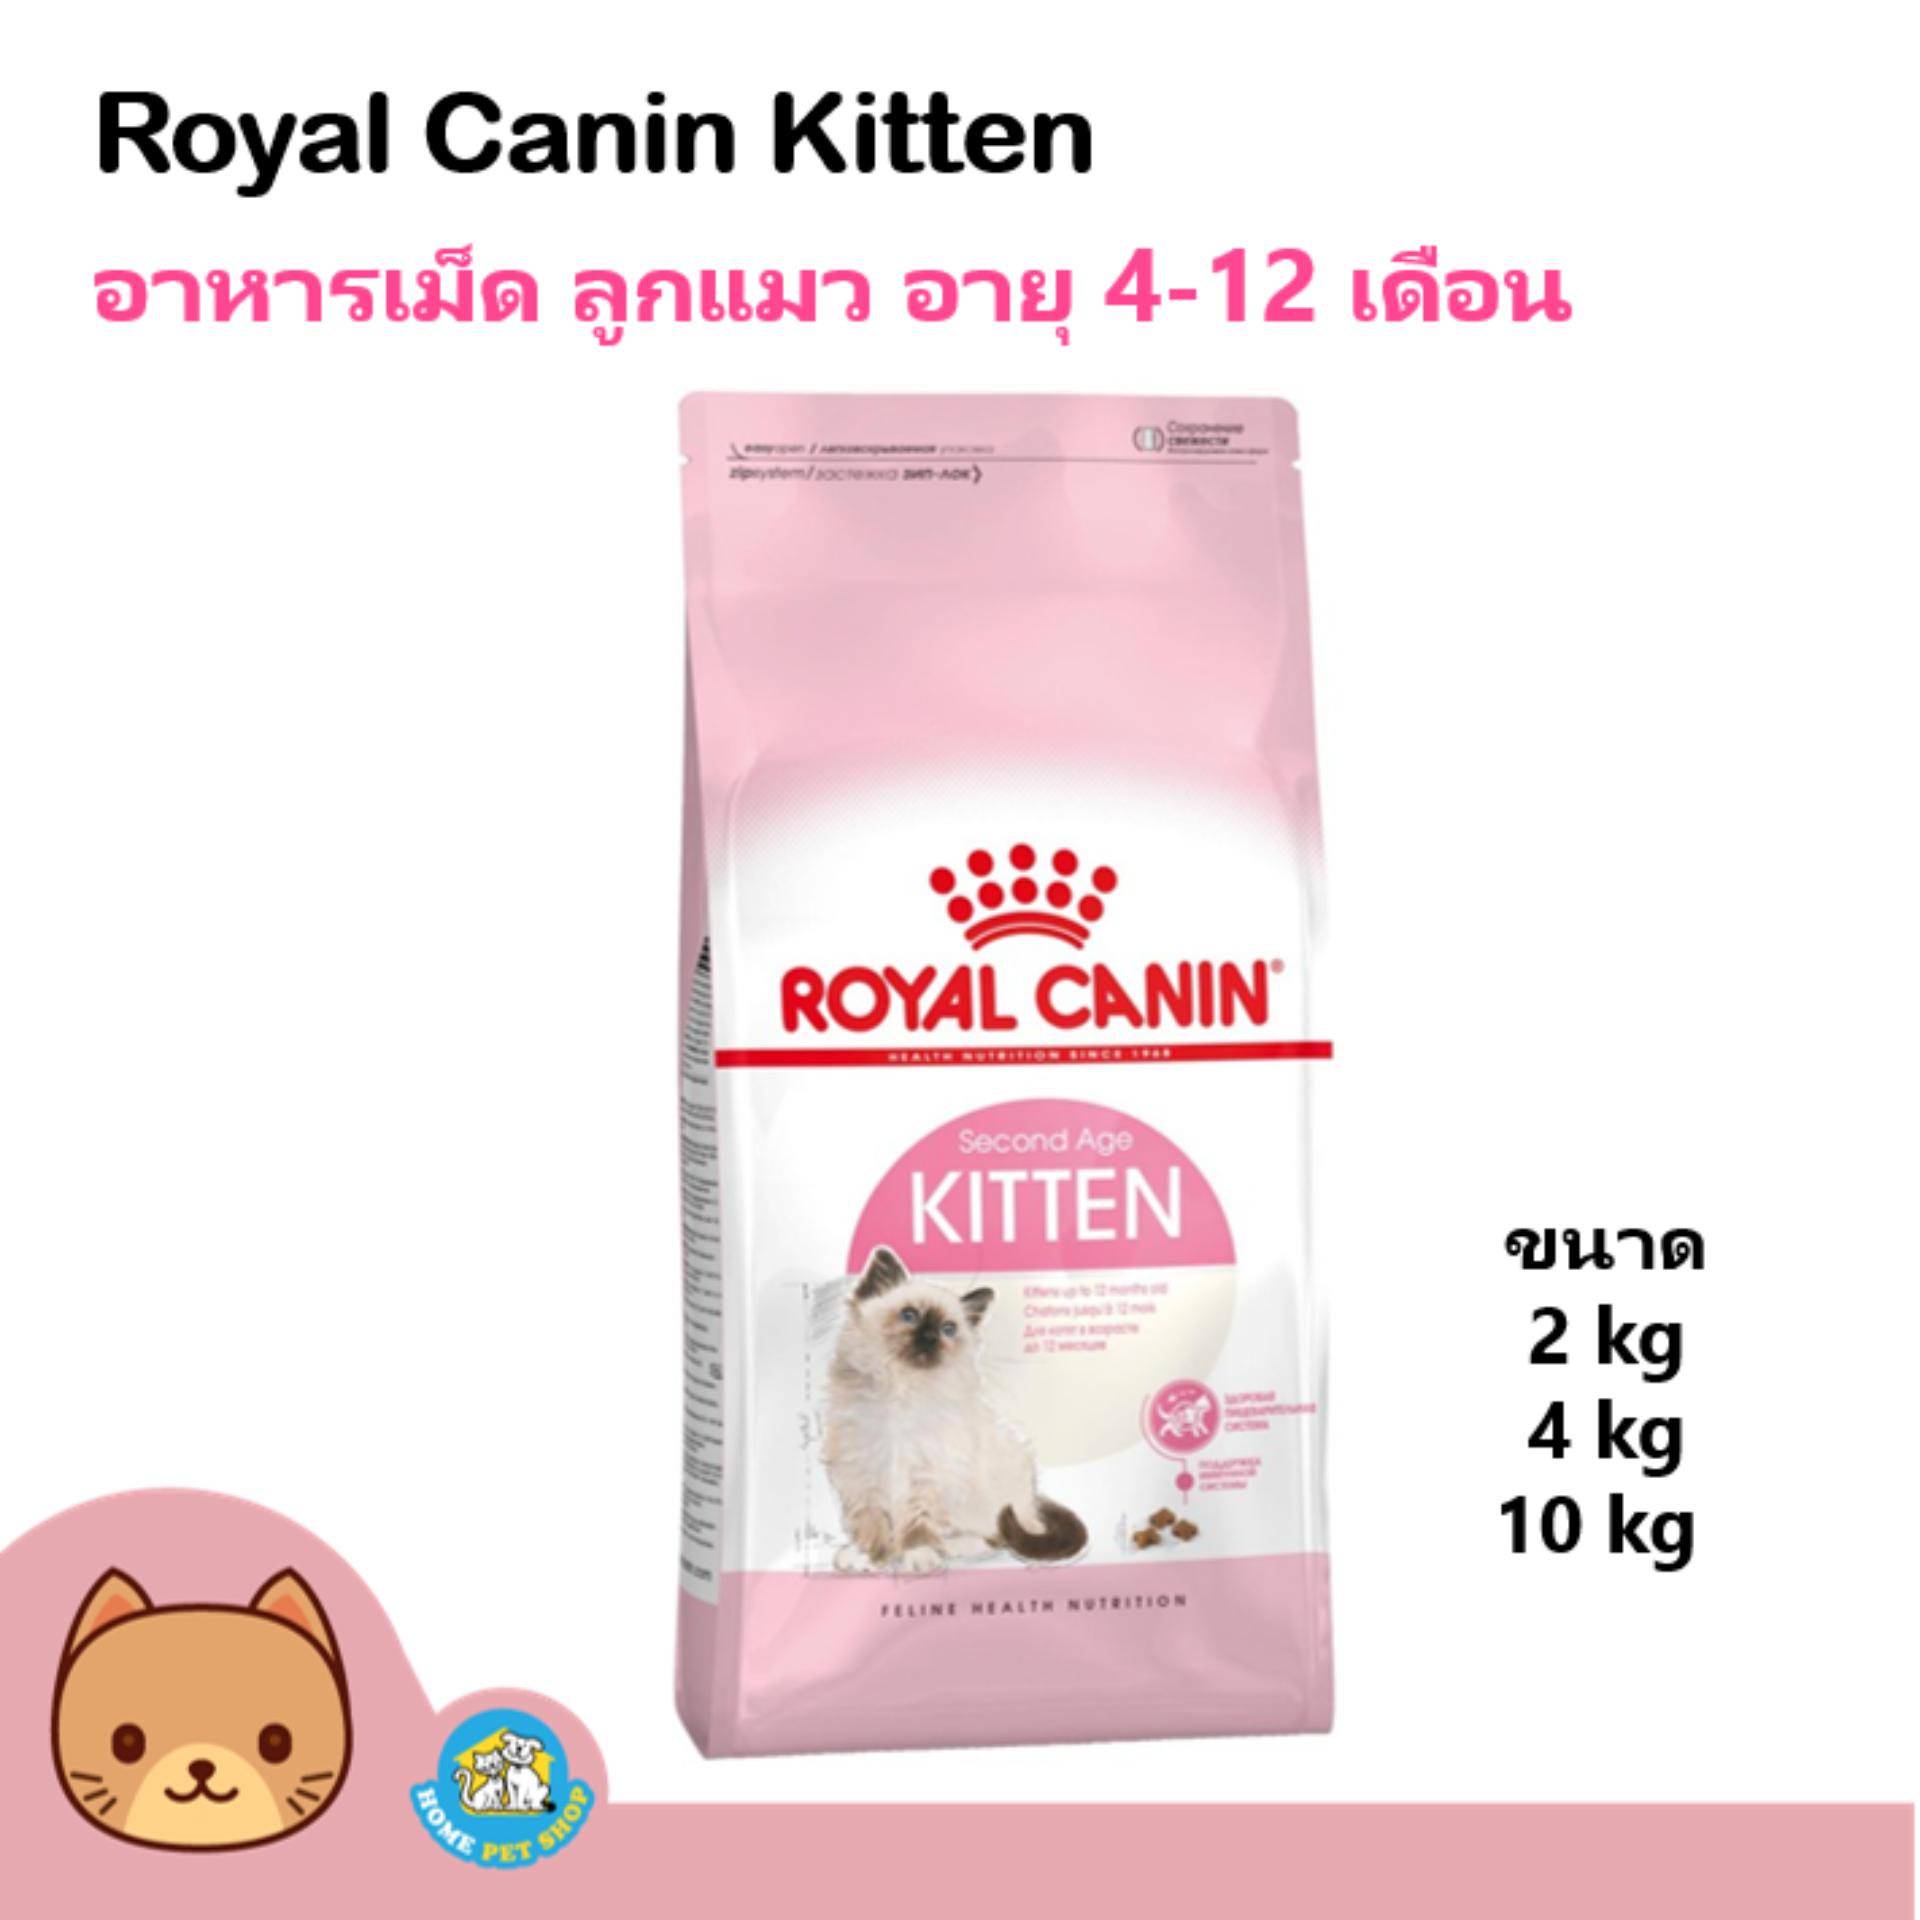 Royal Canin Kitten  อาหารสำหรับลูกแมวอายุ 4-12เดือน